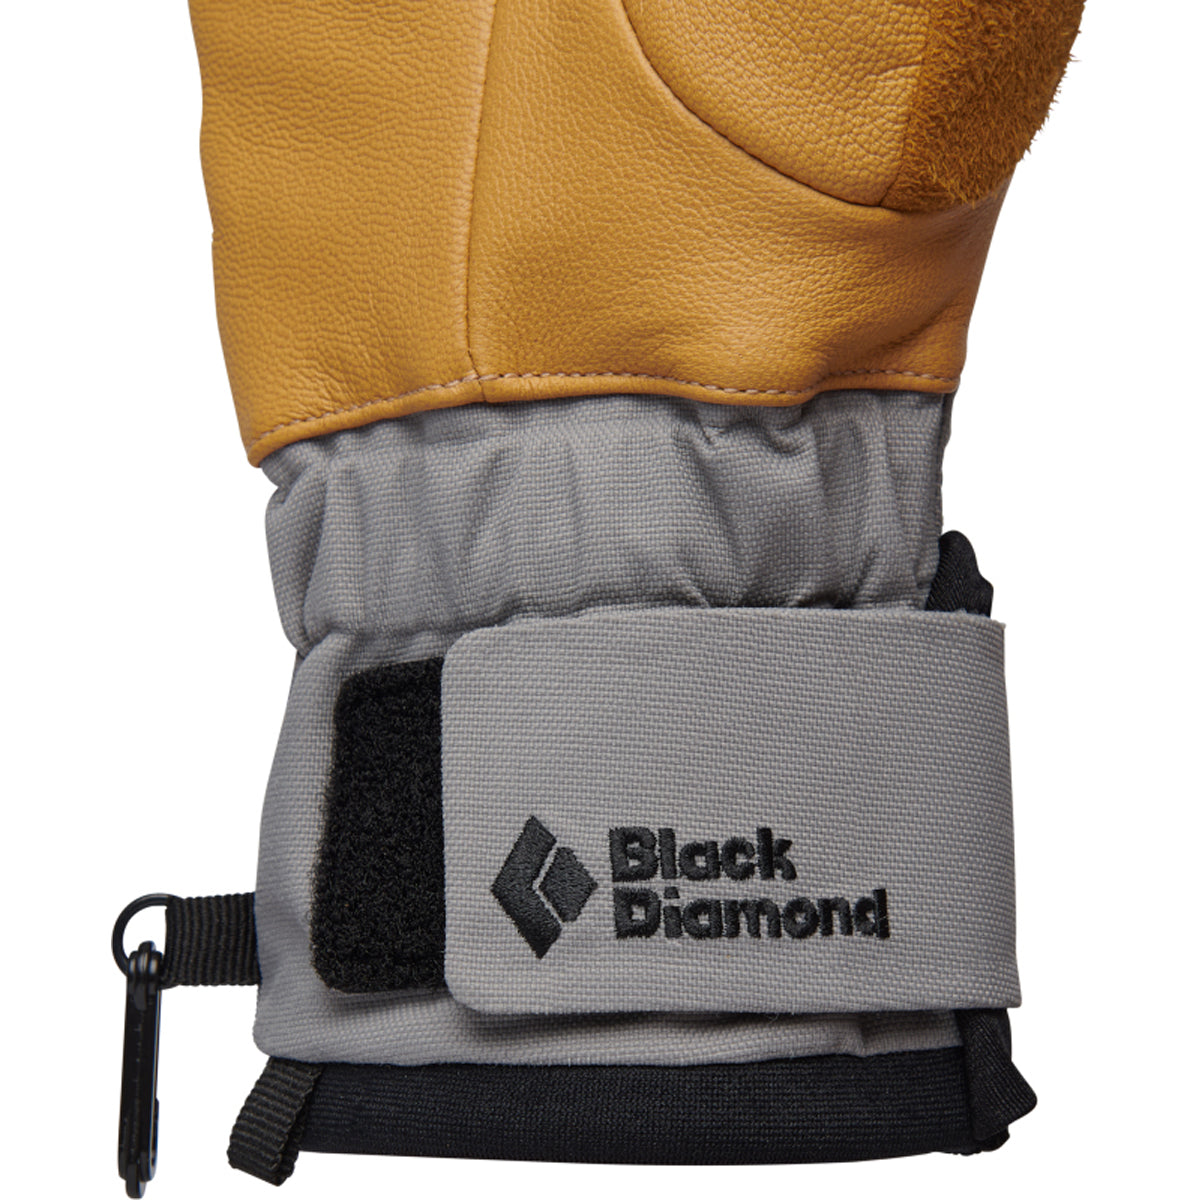 BD Black Diamond W Legend guantes de ski mujer